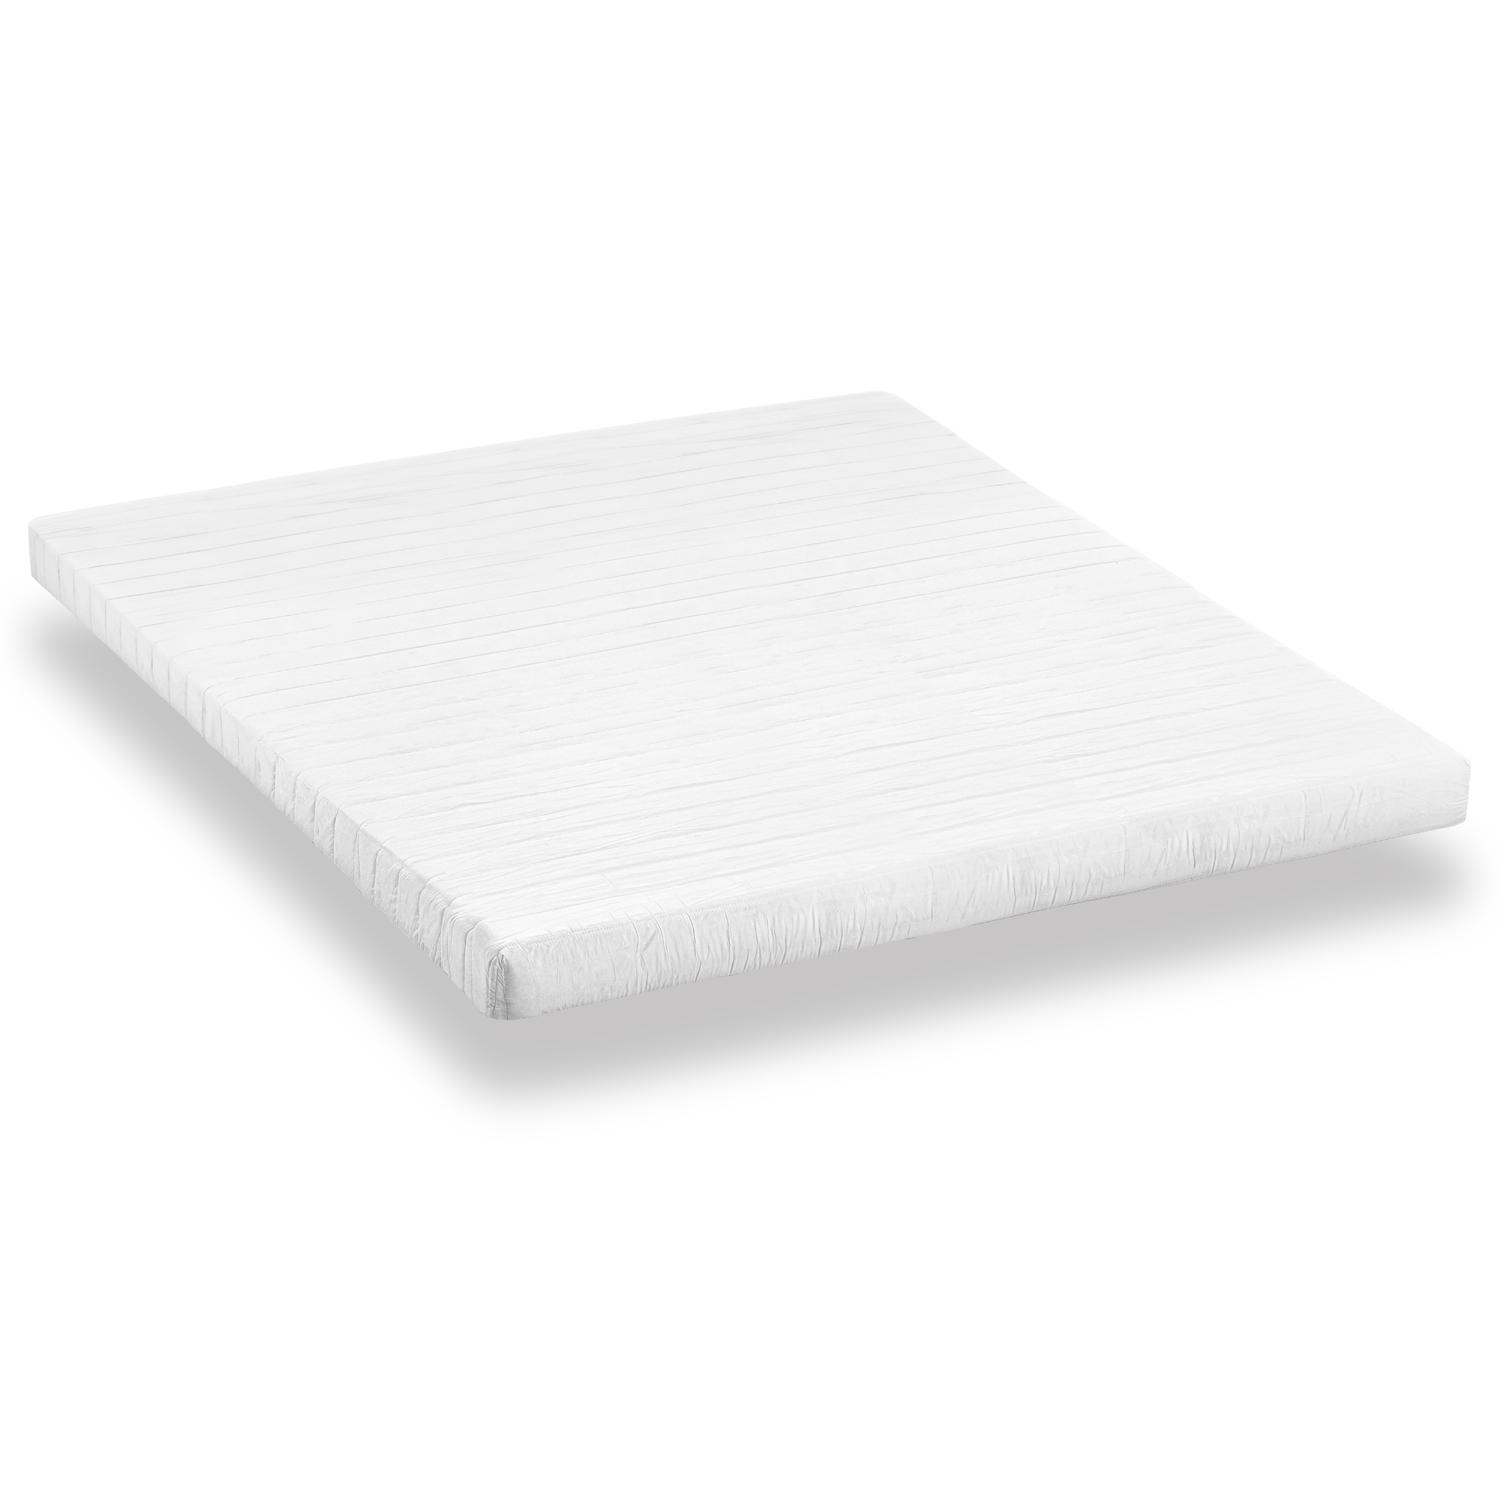 Comfort foam mattress K10 180 x 200 cm, height 10 cm, firmness level H3